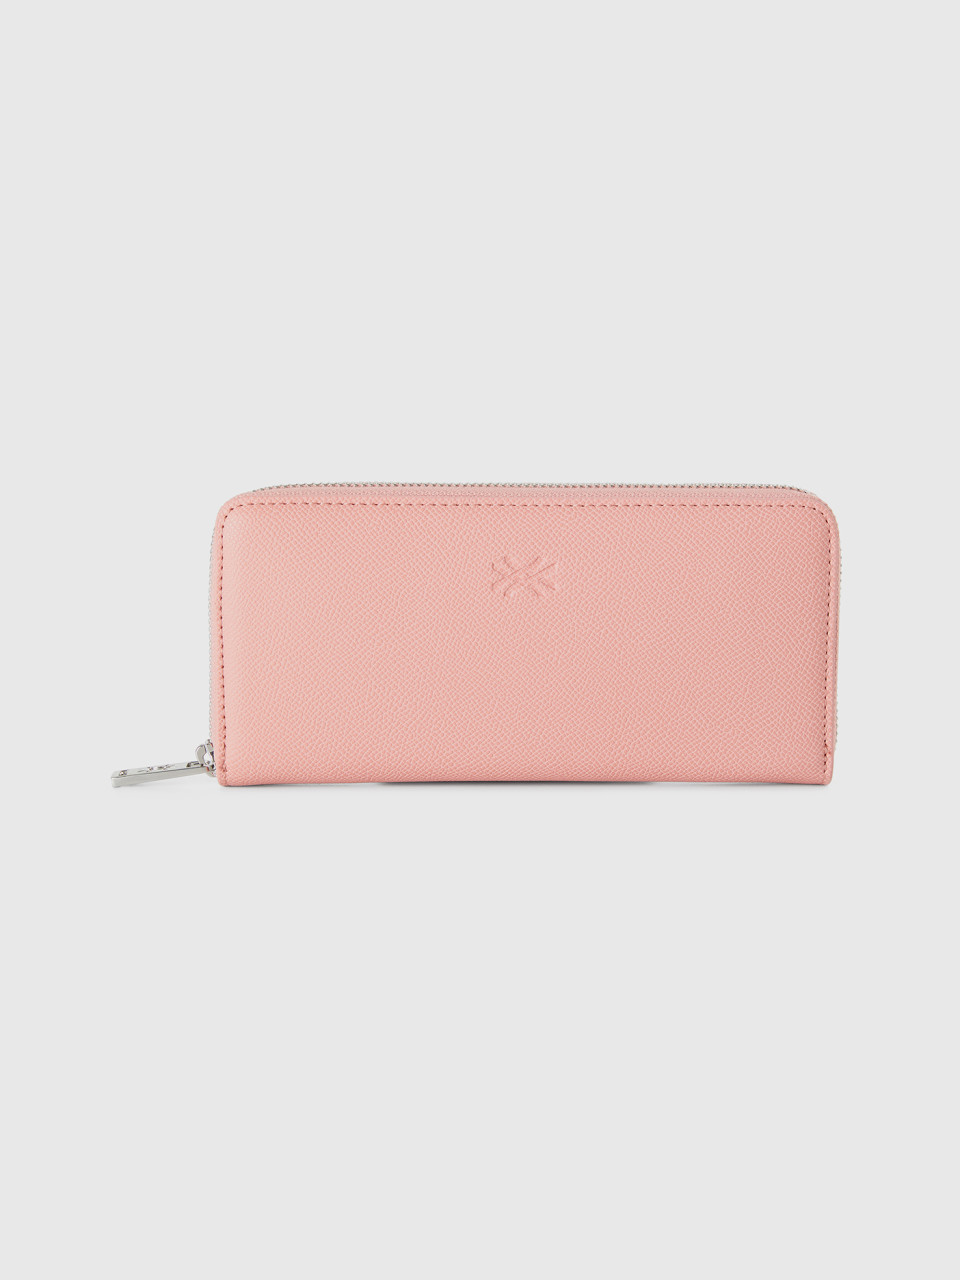 Benetton, Large Zip Wallet, Pink, Women